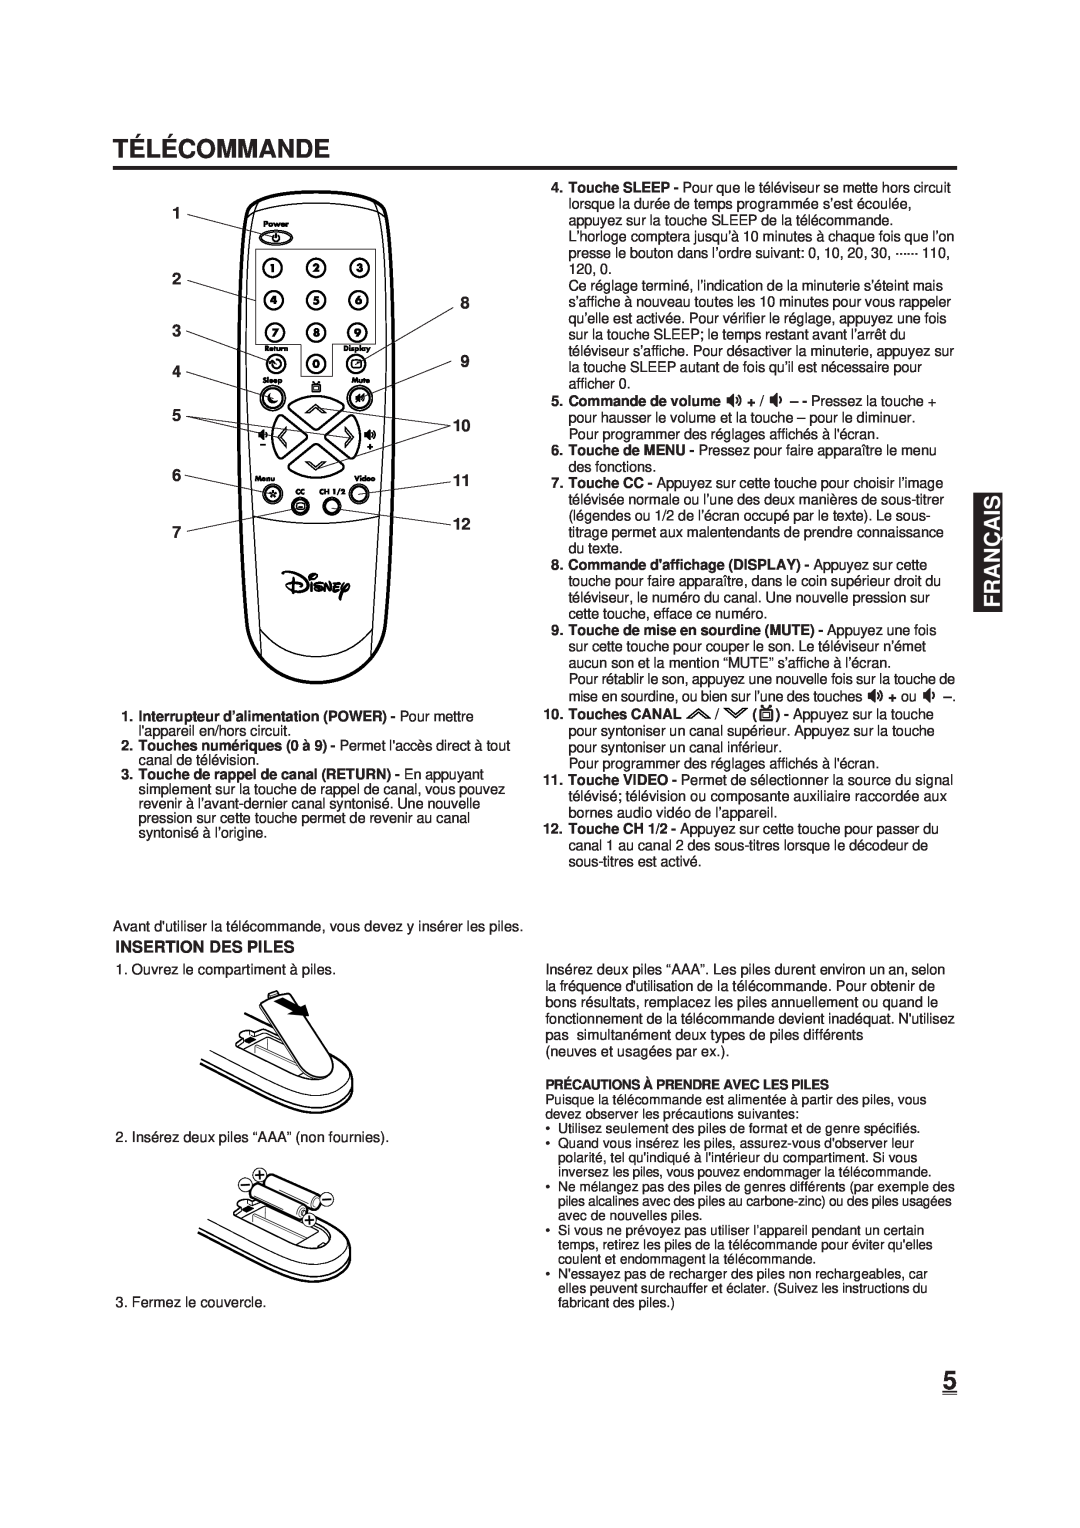 Memorex DT1900-C manual Té Lé Commande, Insertion Des Piles, Franç Ais 